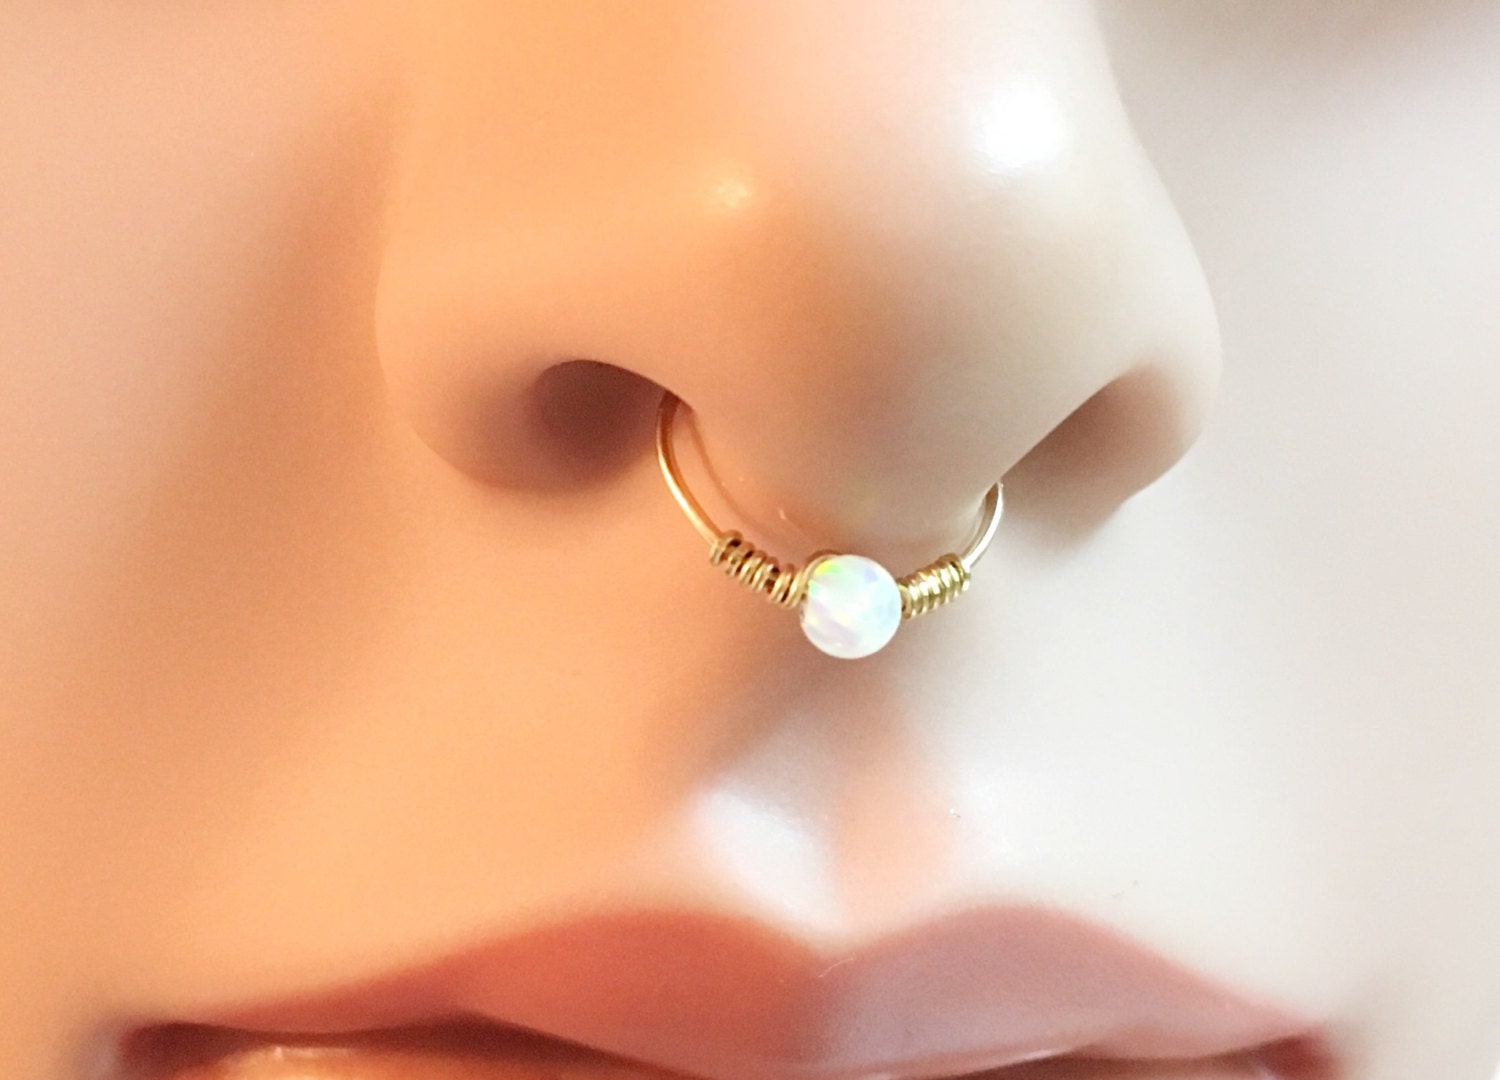 Fake nose ring fake septum ring fake piercing by FlowerRainbowNJ